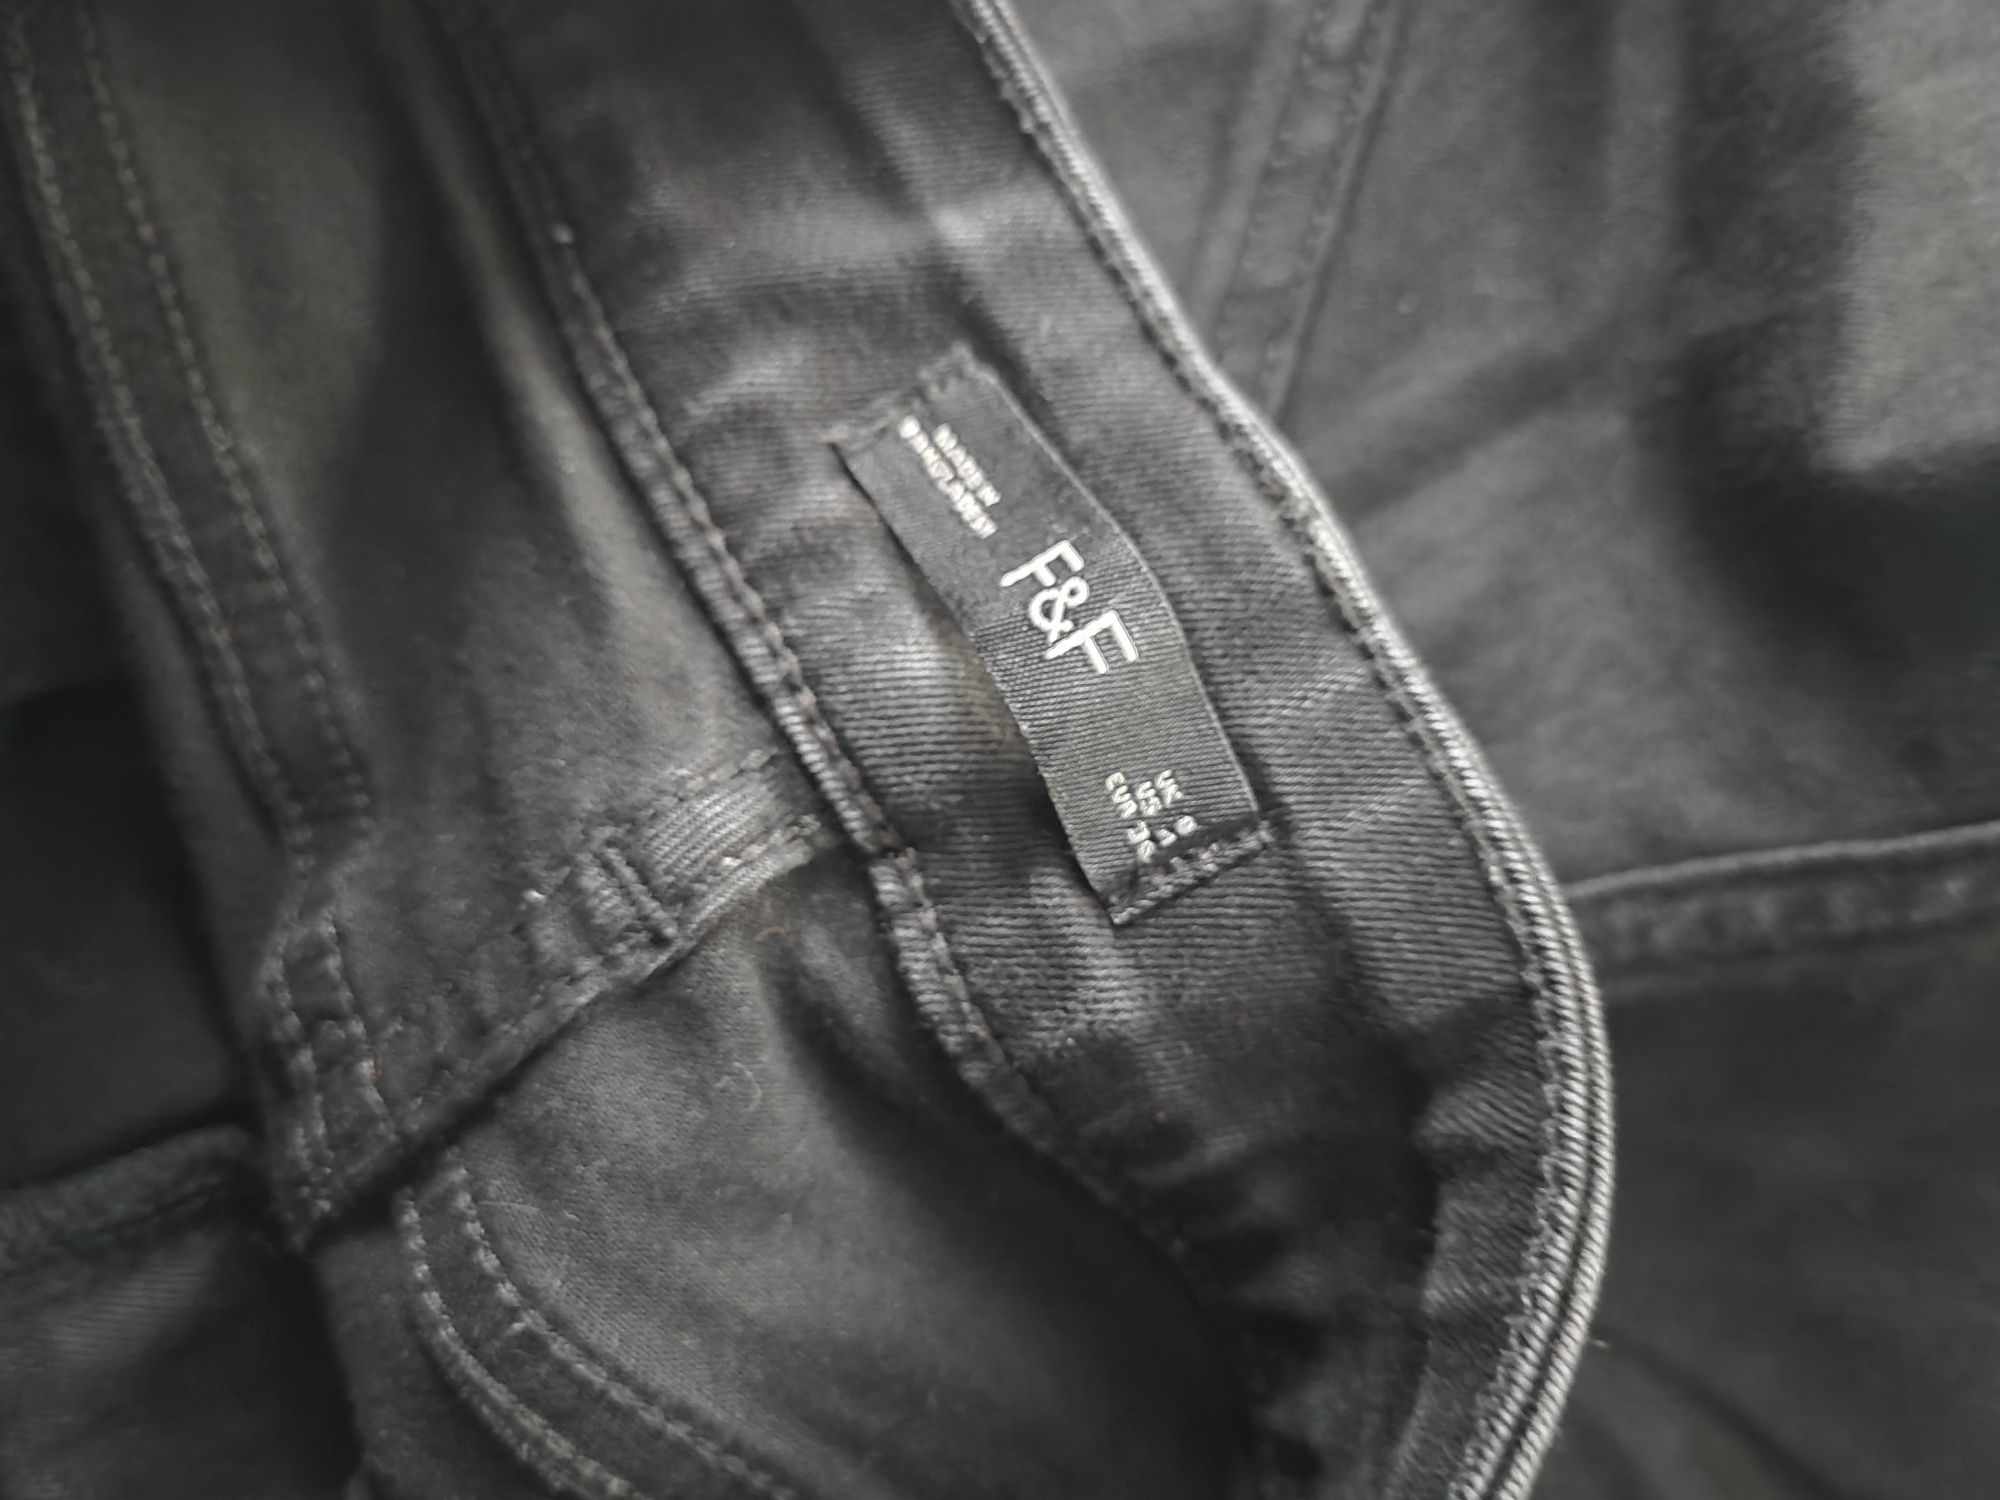 3420. F&F czarne jeansy 36 S